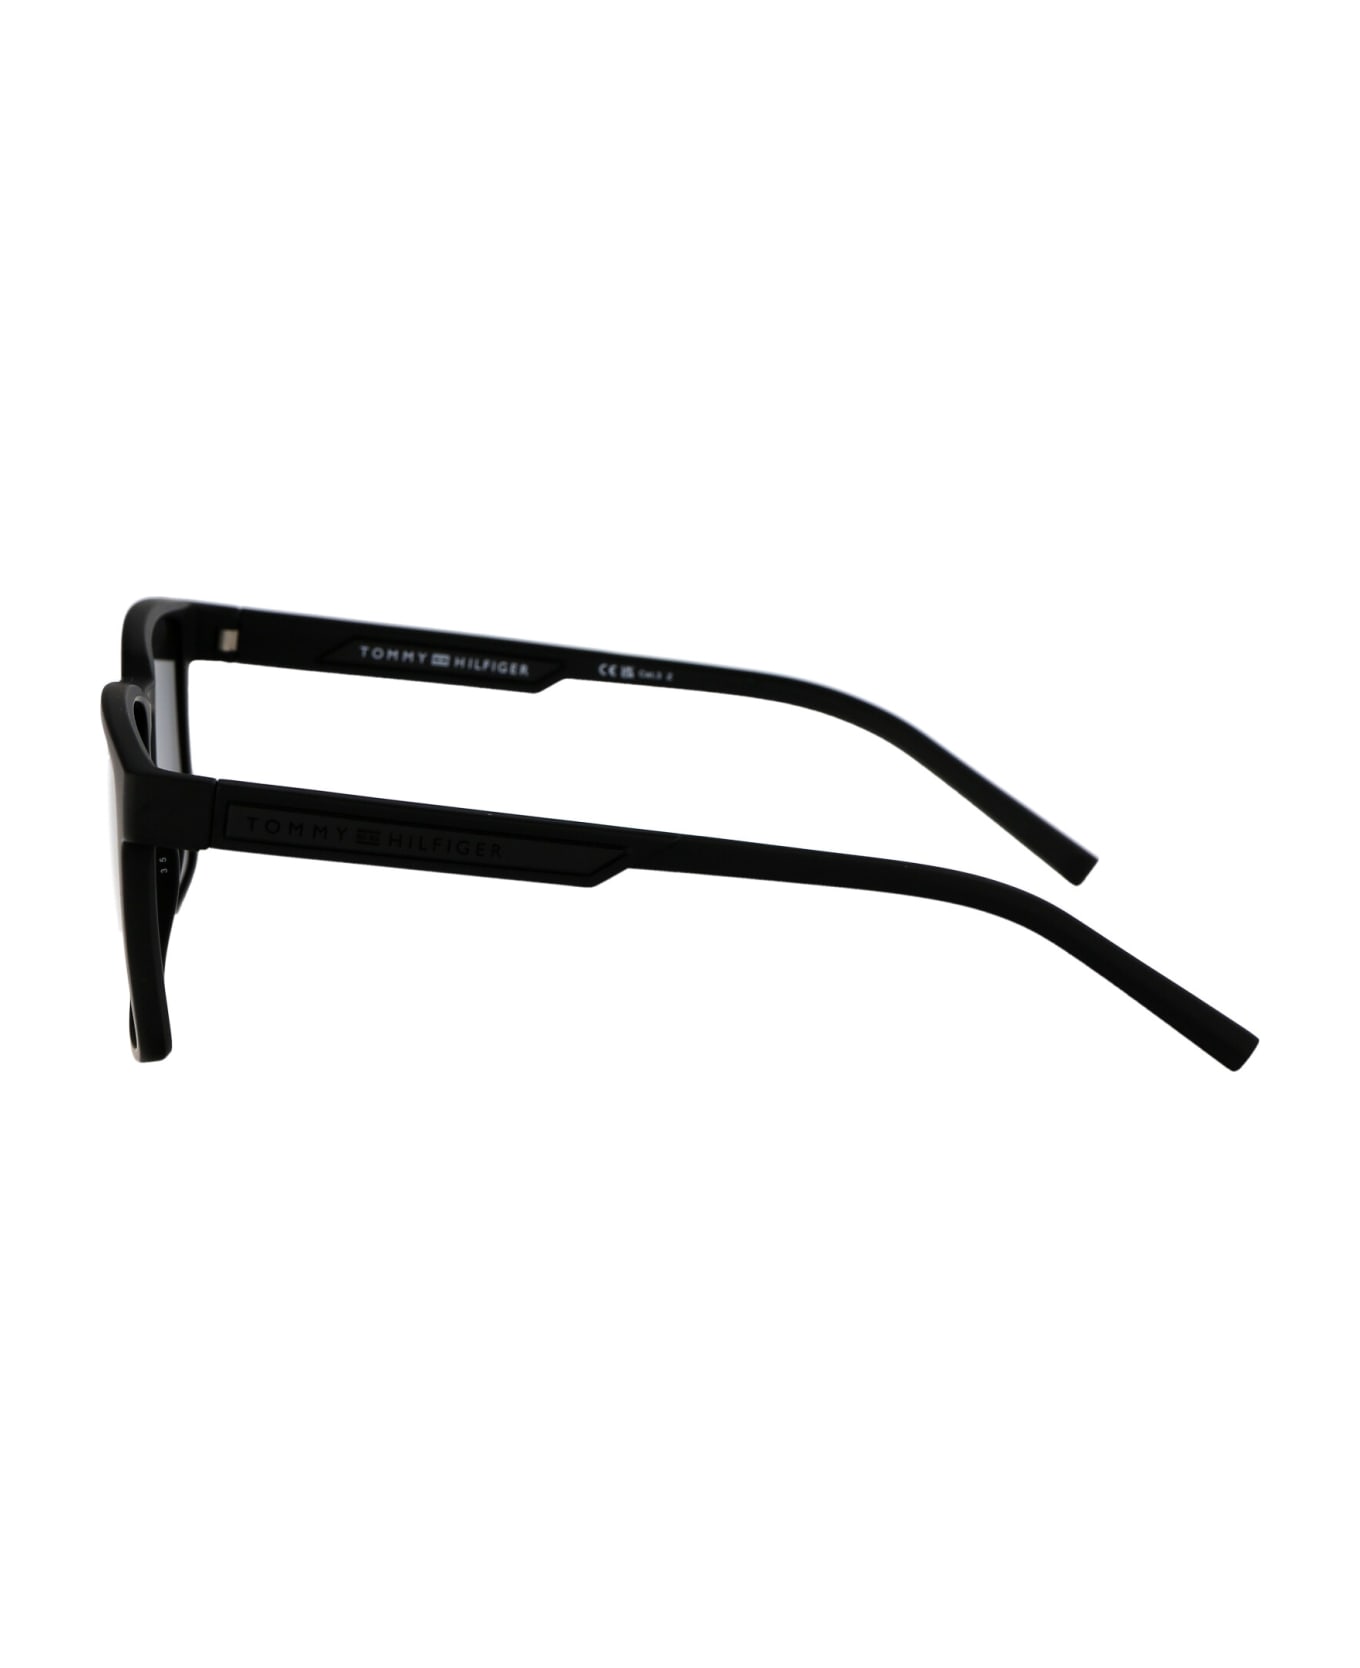 Tommy Hilfiger Th 2088/s Sunglasses - 003M9 MTT BLACK